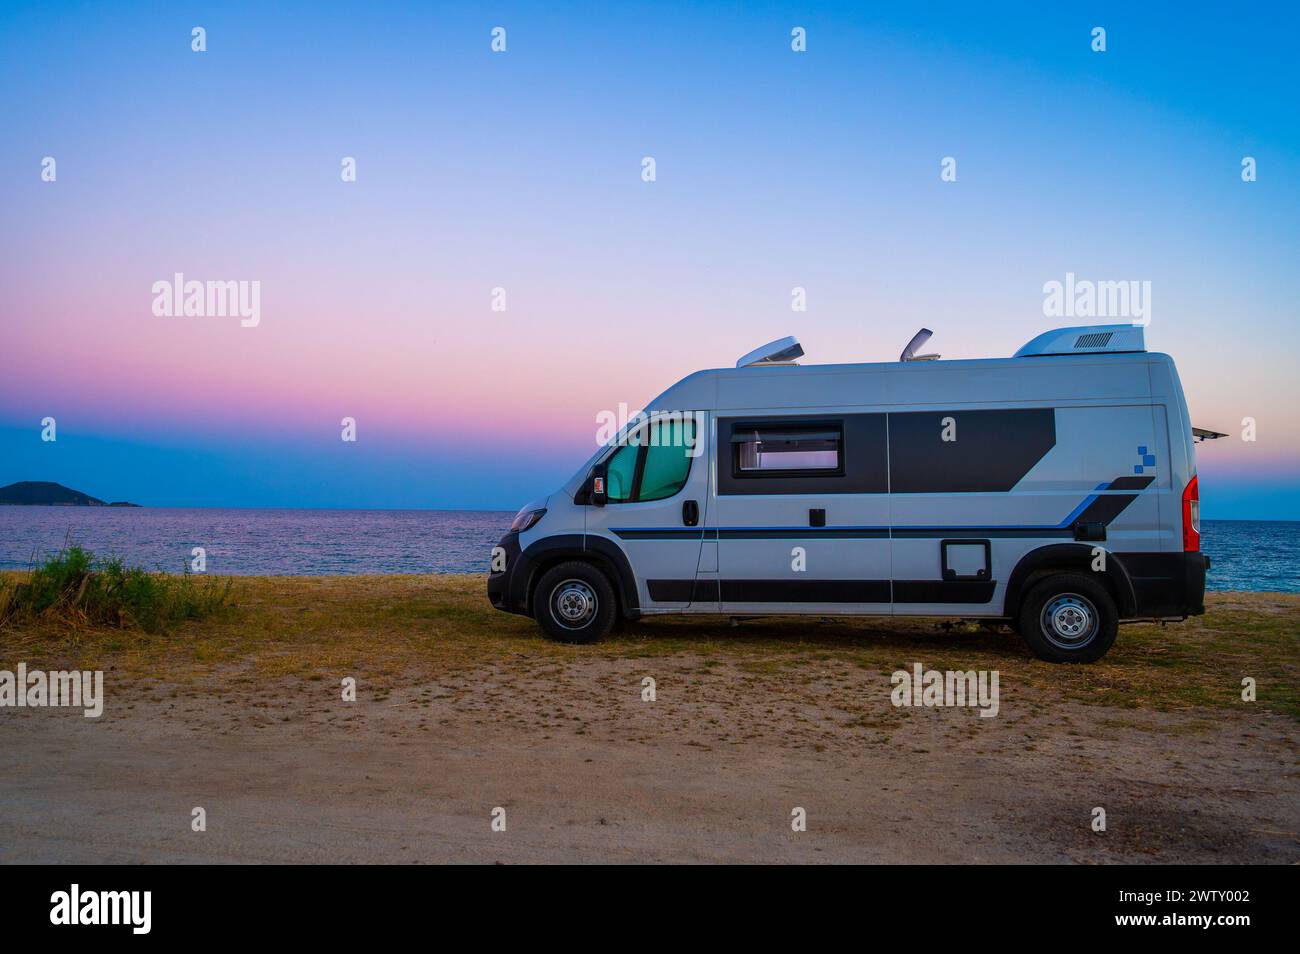 Wohnmobil oder Wohnmobil am Strand in Griechenland. Wohnmobil ist wilde Camping am Strand in Griechenland, Albanien oder Kroatien am Abend. Stockfoto